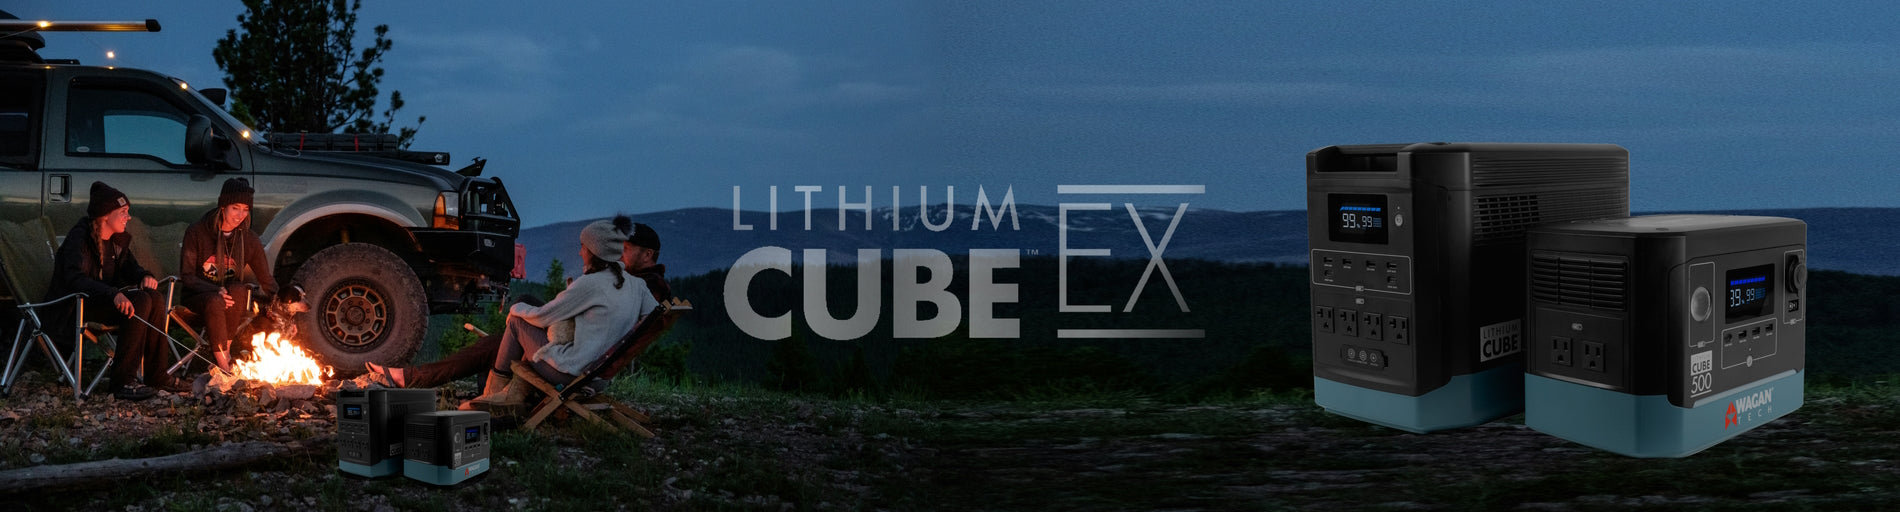 lithium cube EX banner